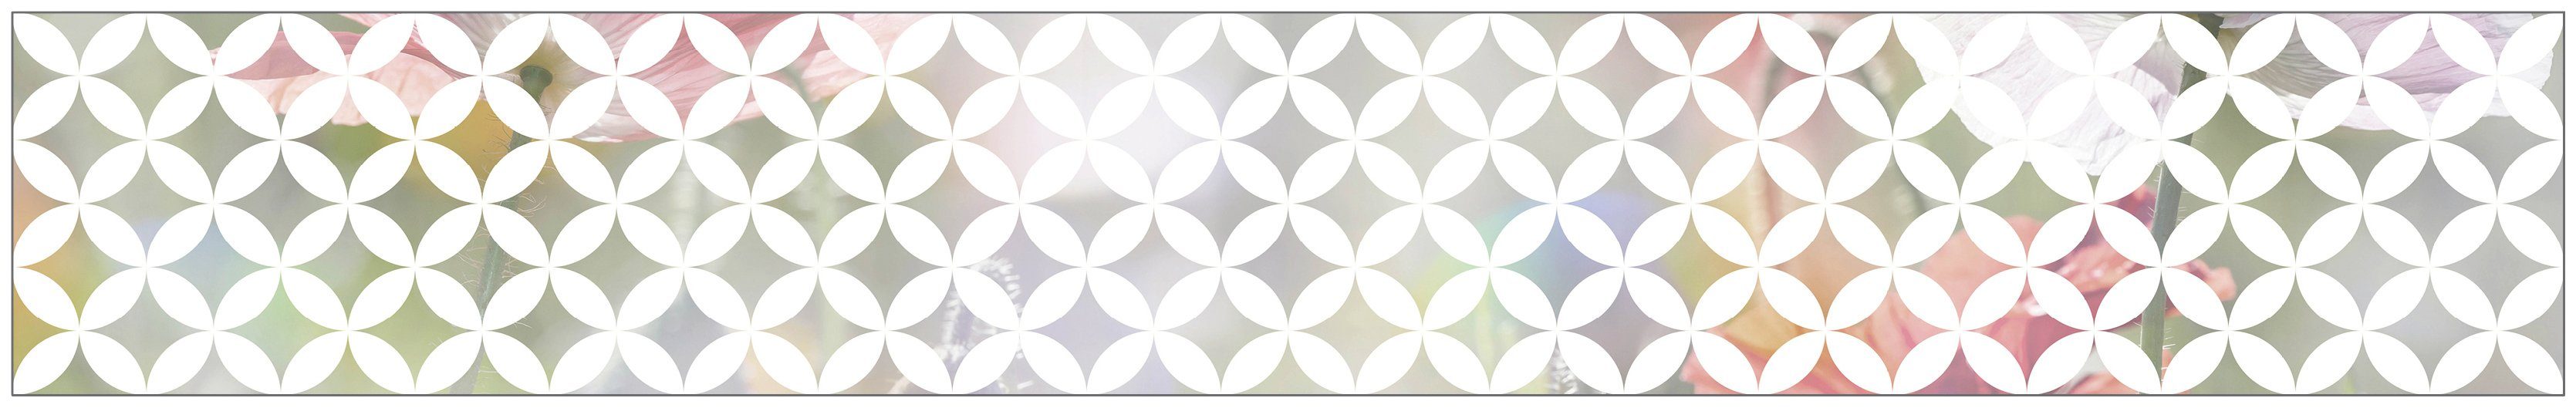 Chadi halbtransparent, 30 x 200 statisch white, MySpotti, cm, glatt, Look haftend Fensterfolie